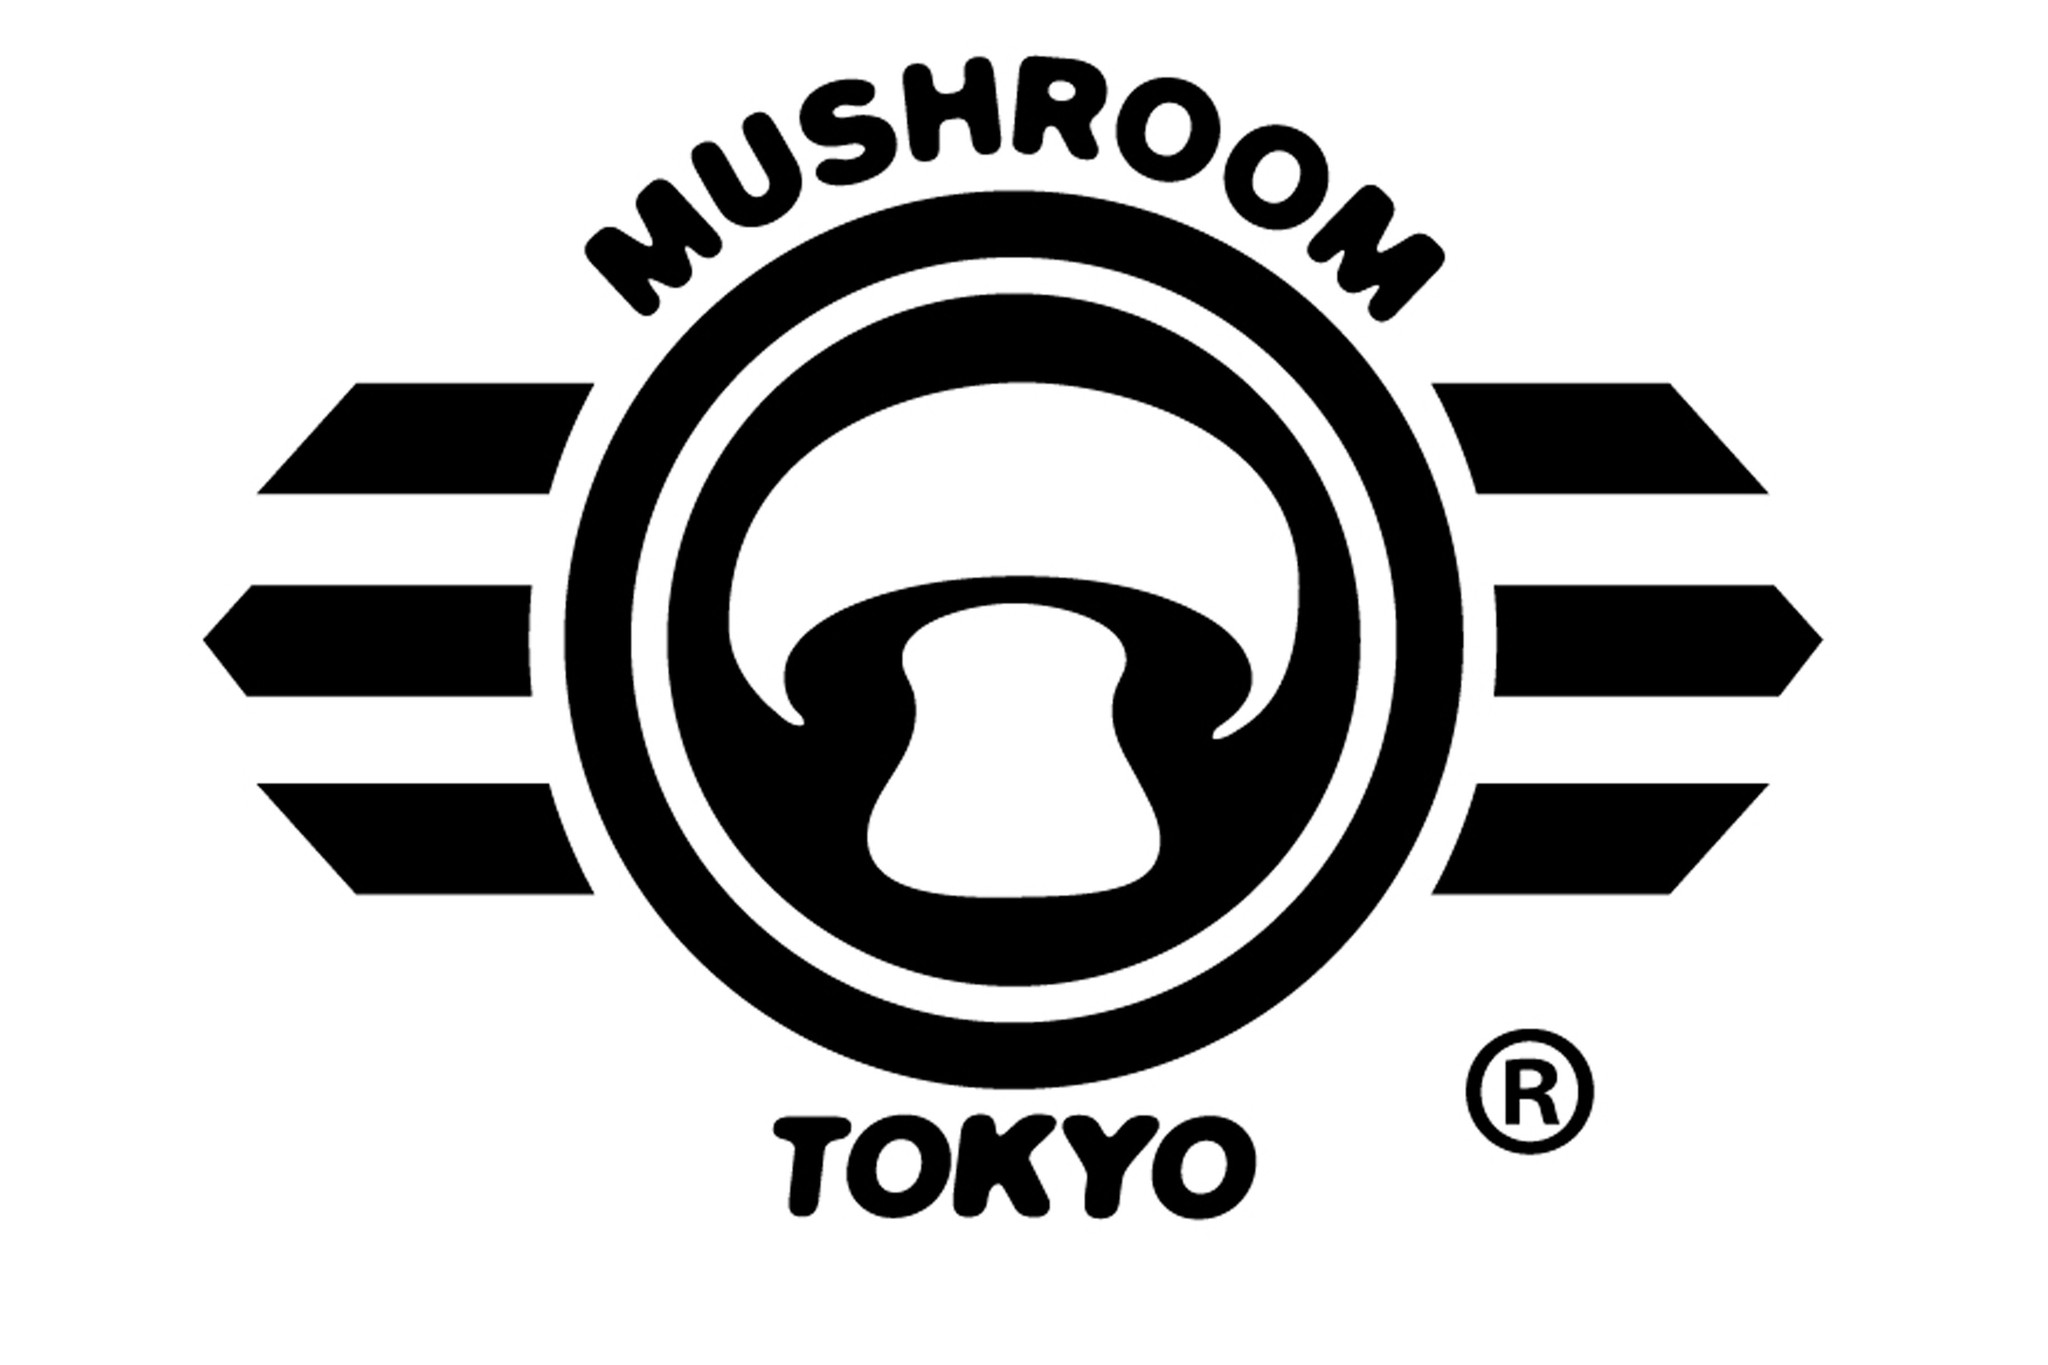 MUSHROOM TOKYO